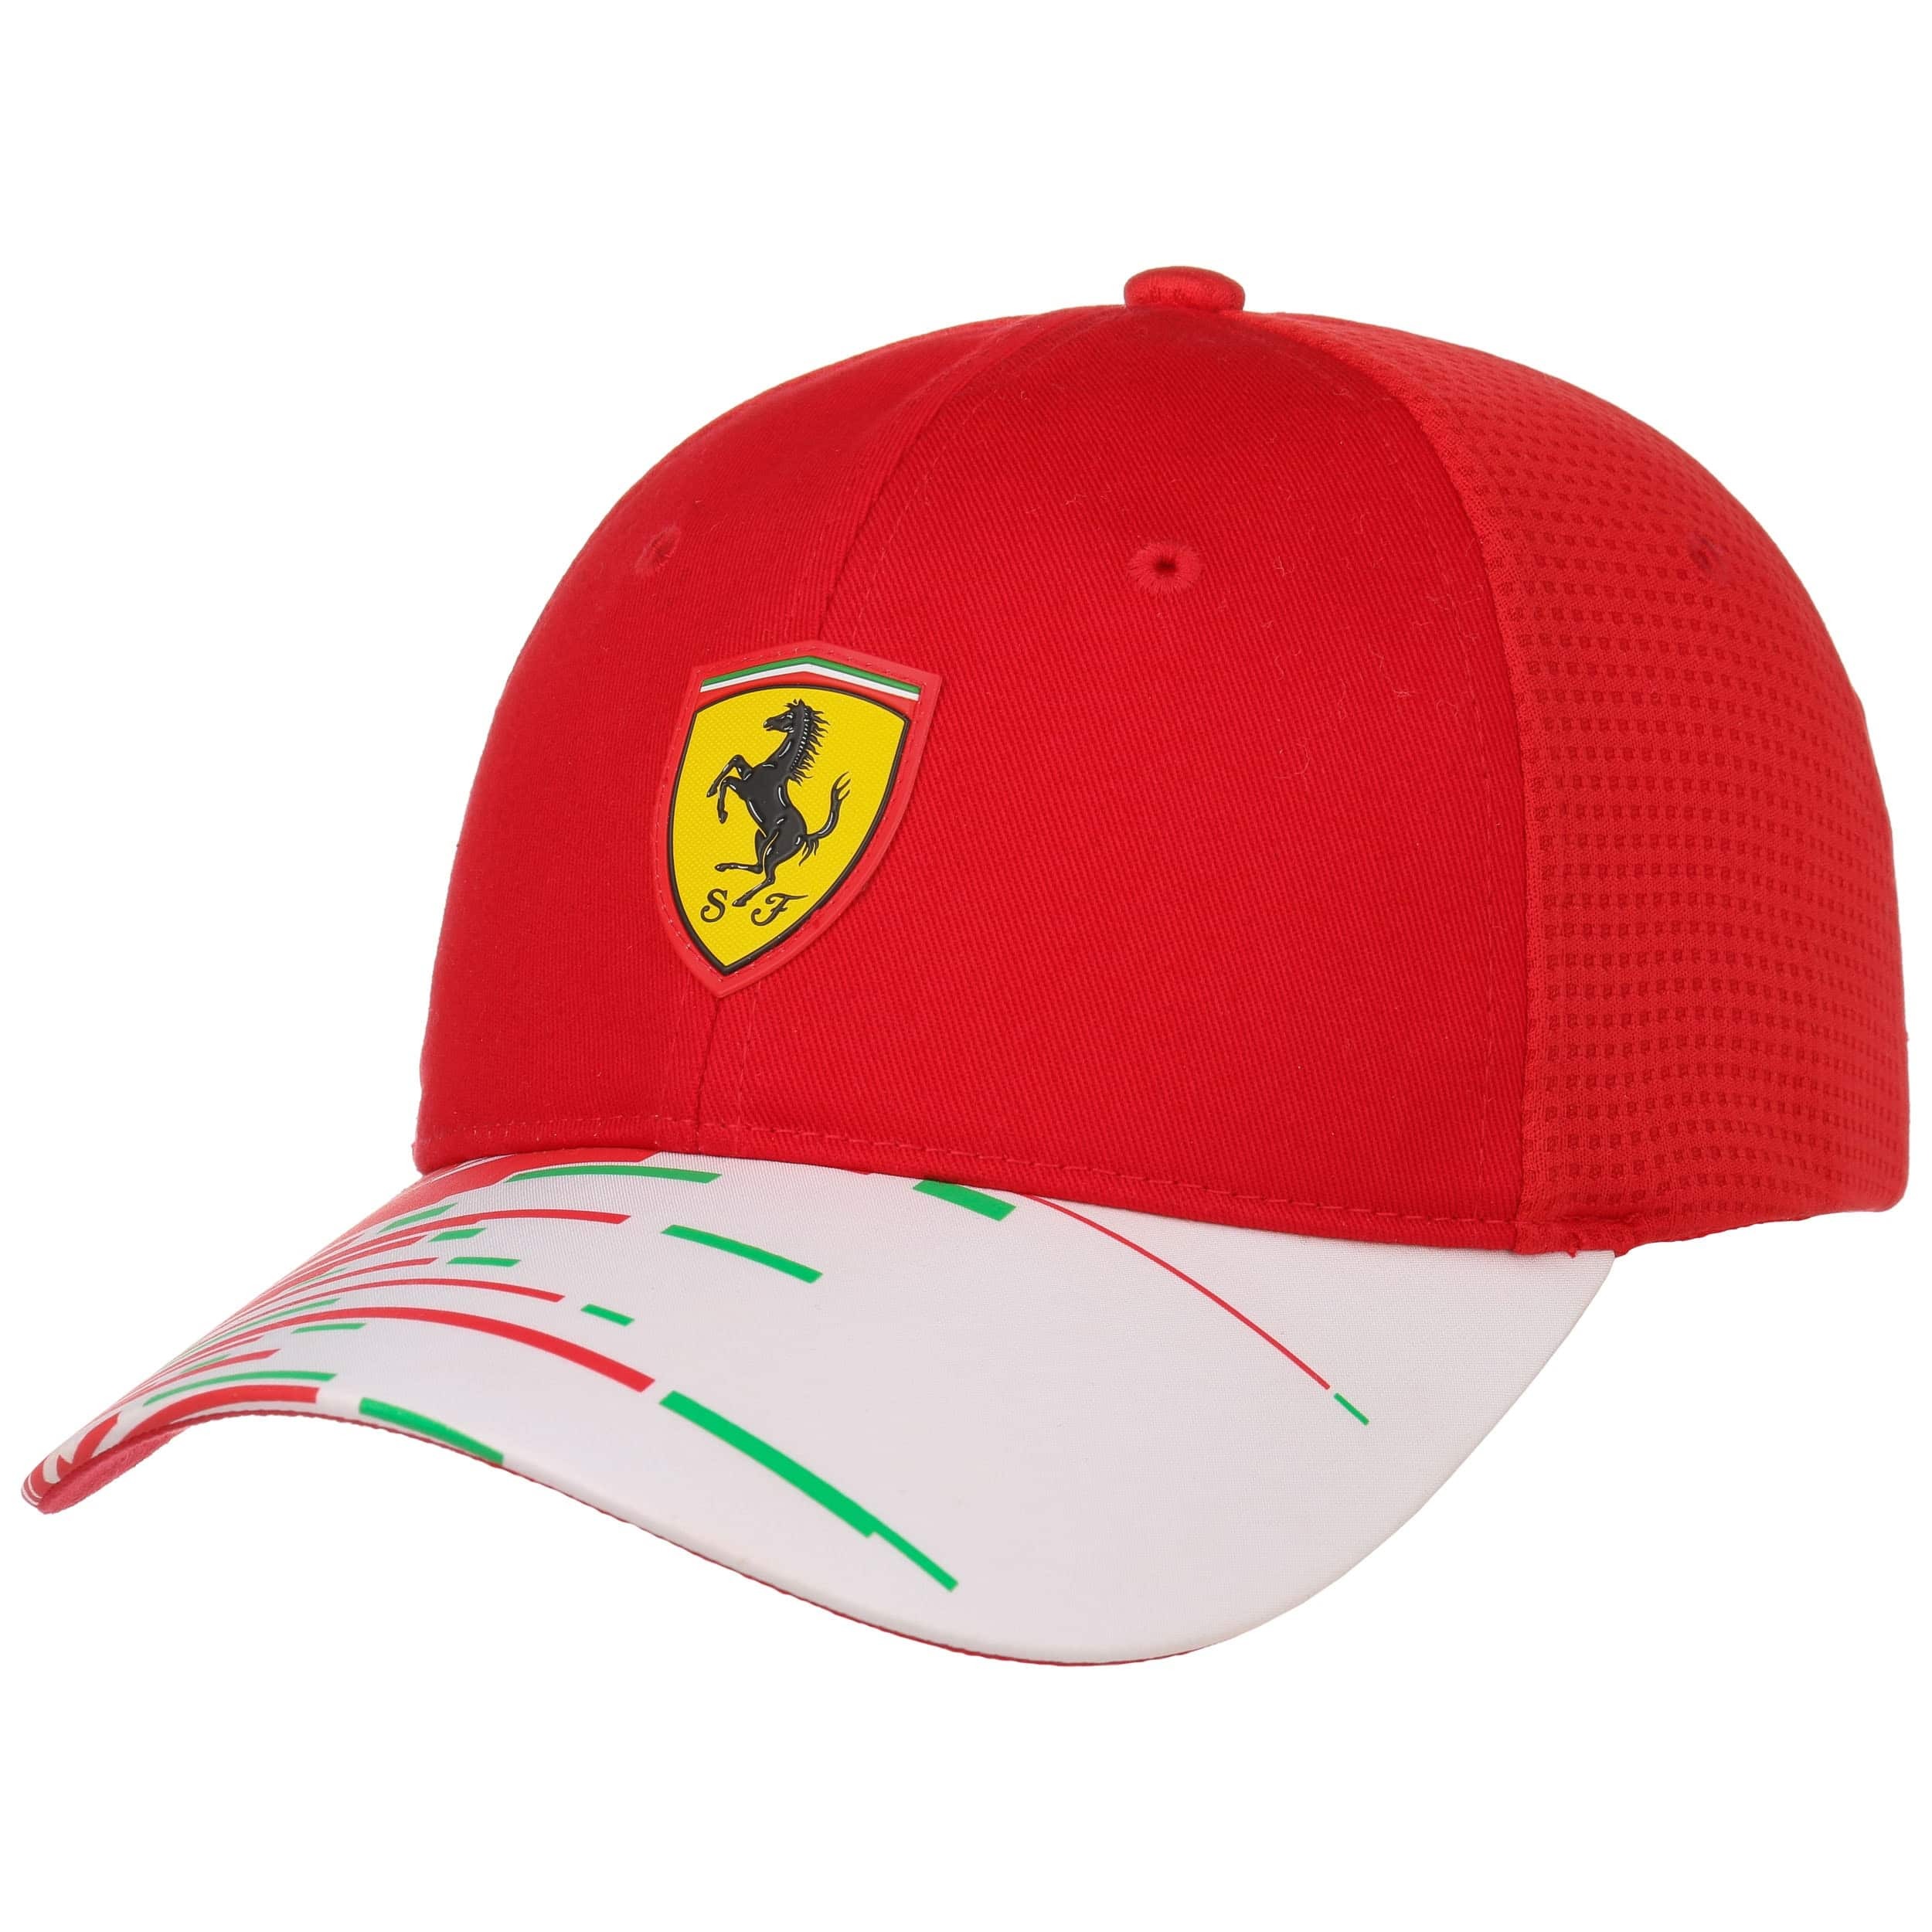 Gorra Scuderia Ferrari Rep Team